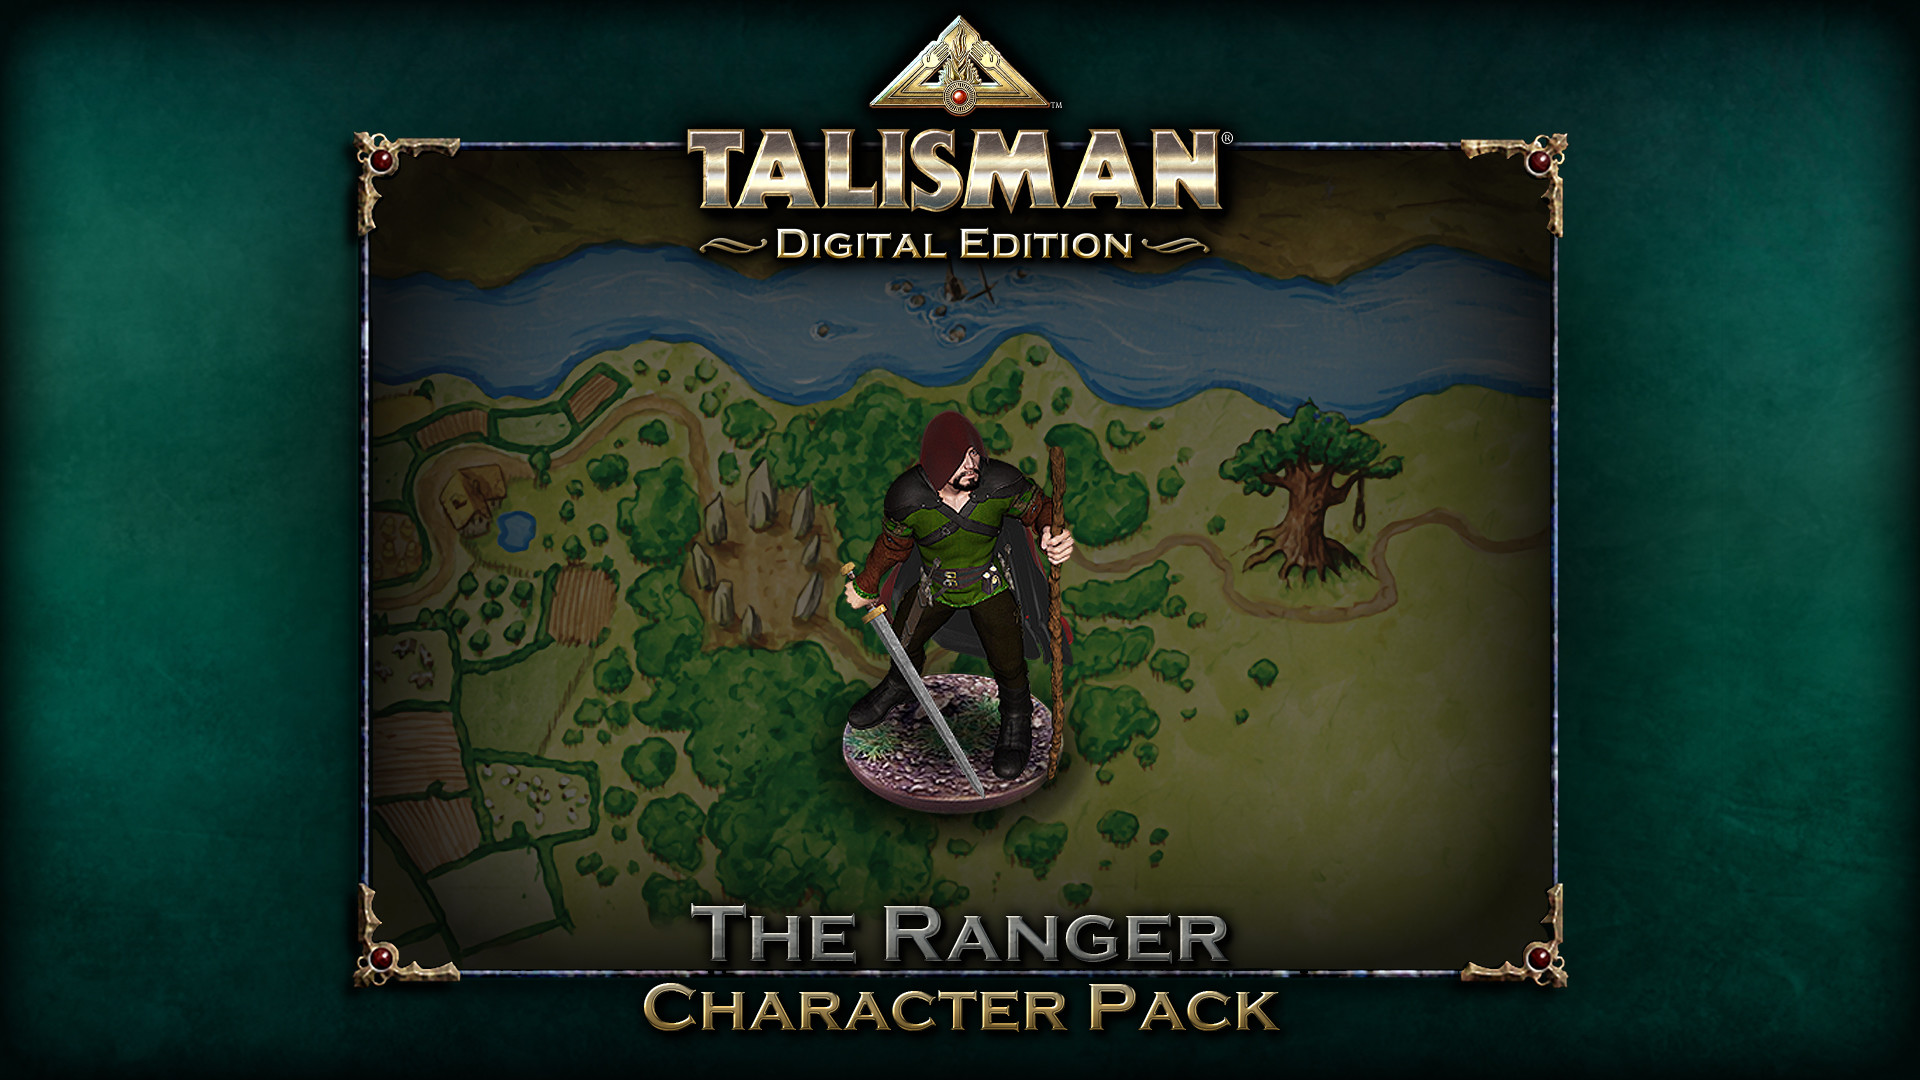 Talisman - Character Pack #20 Ranger DLC Steam CD Key 0.86 $